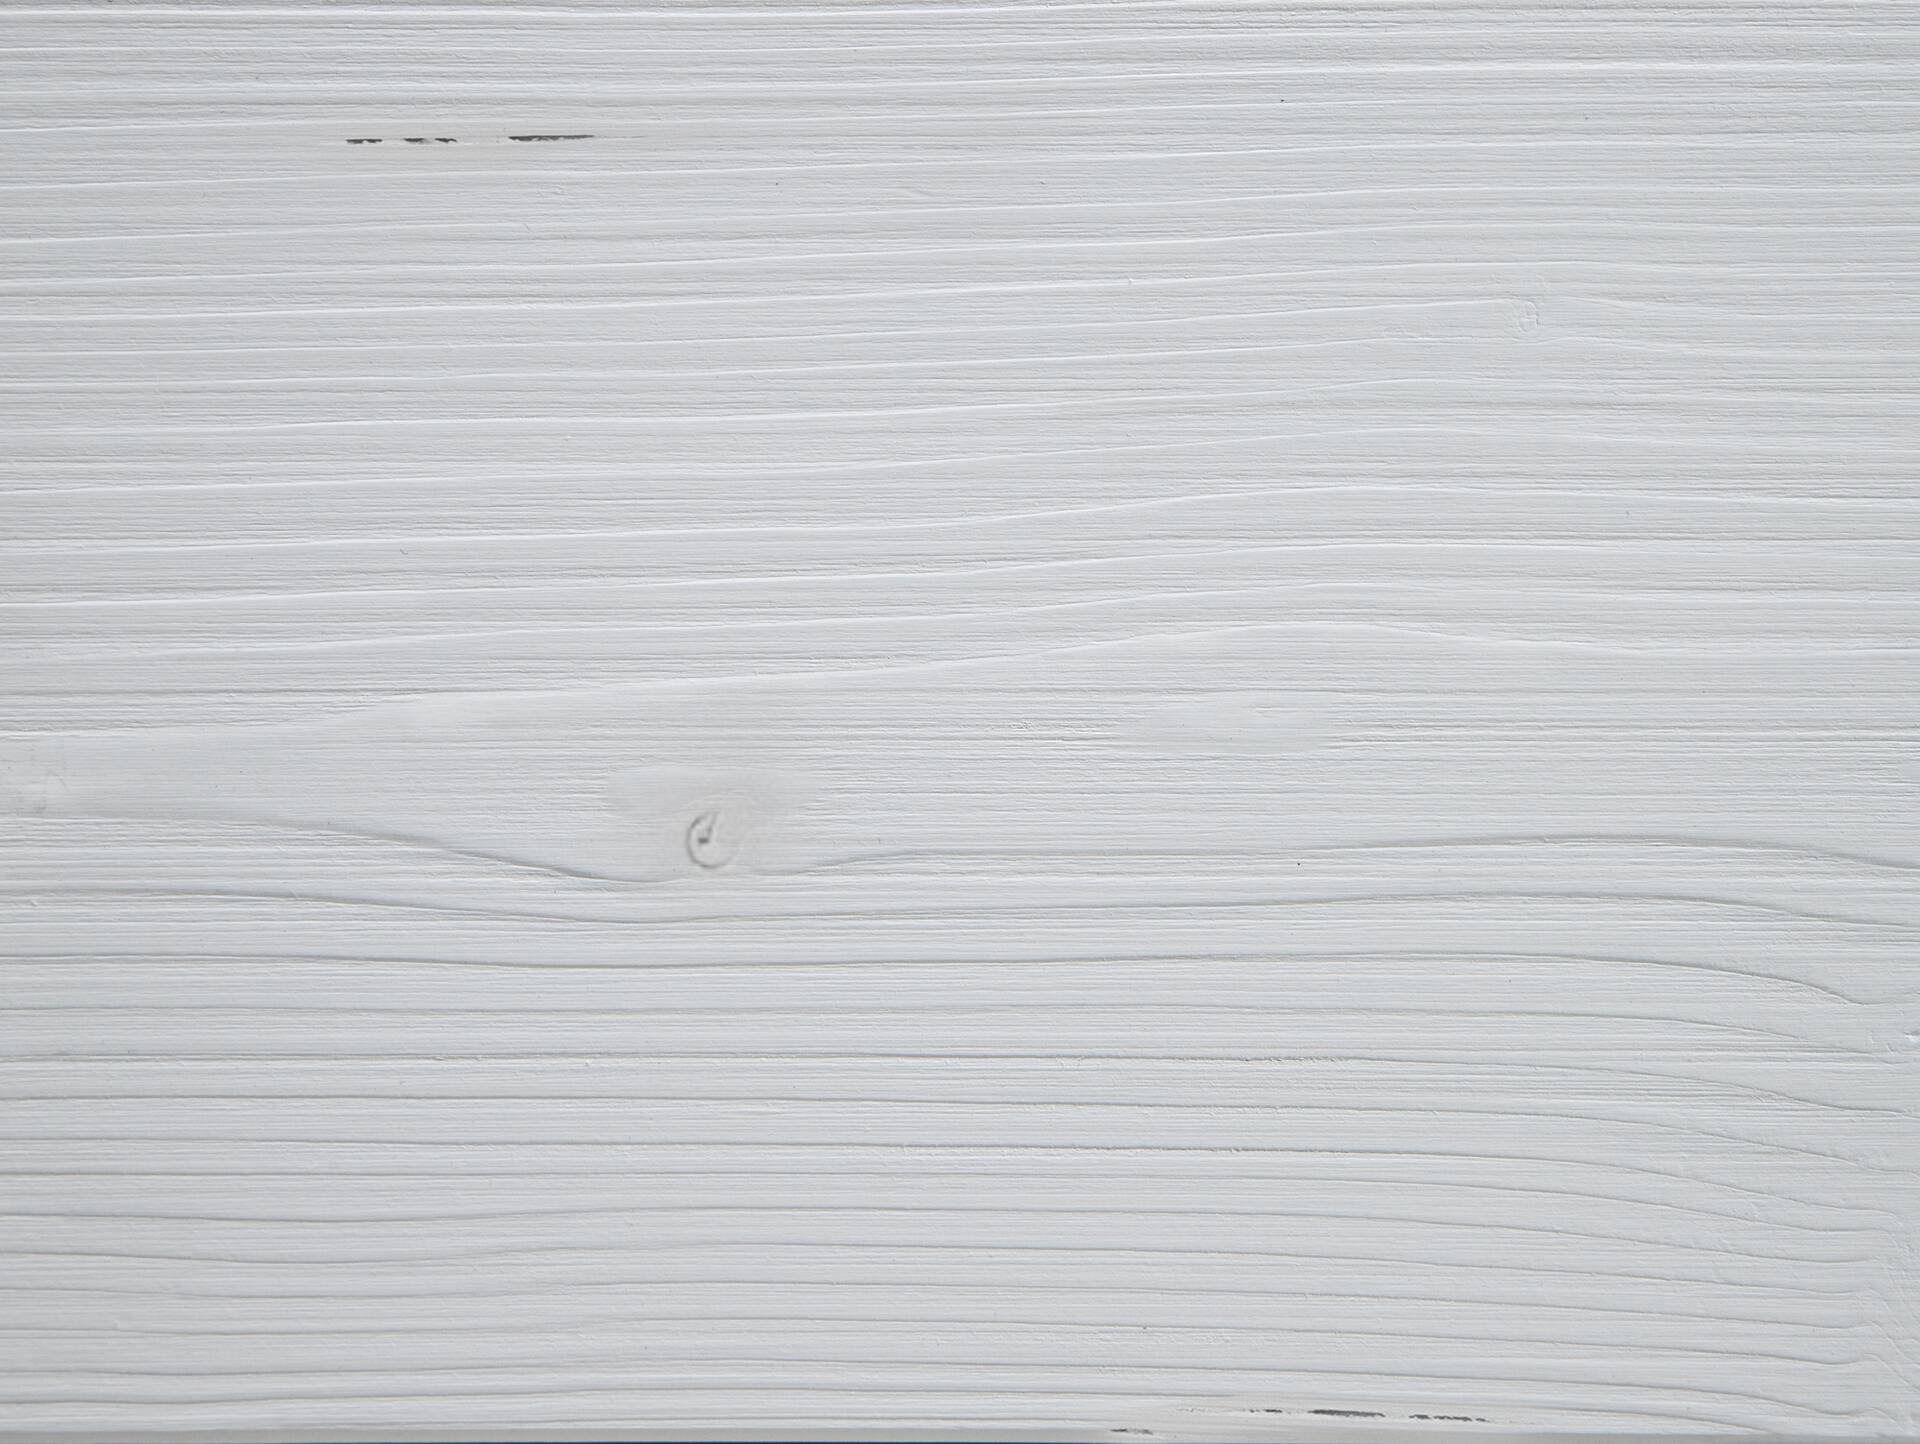 LUKY Bett Metallfuß, mit Polsterkopfteil, Material Massivholz, Fichte massiv 180 x 220 cm | weiss | Stoff Anthrazit